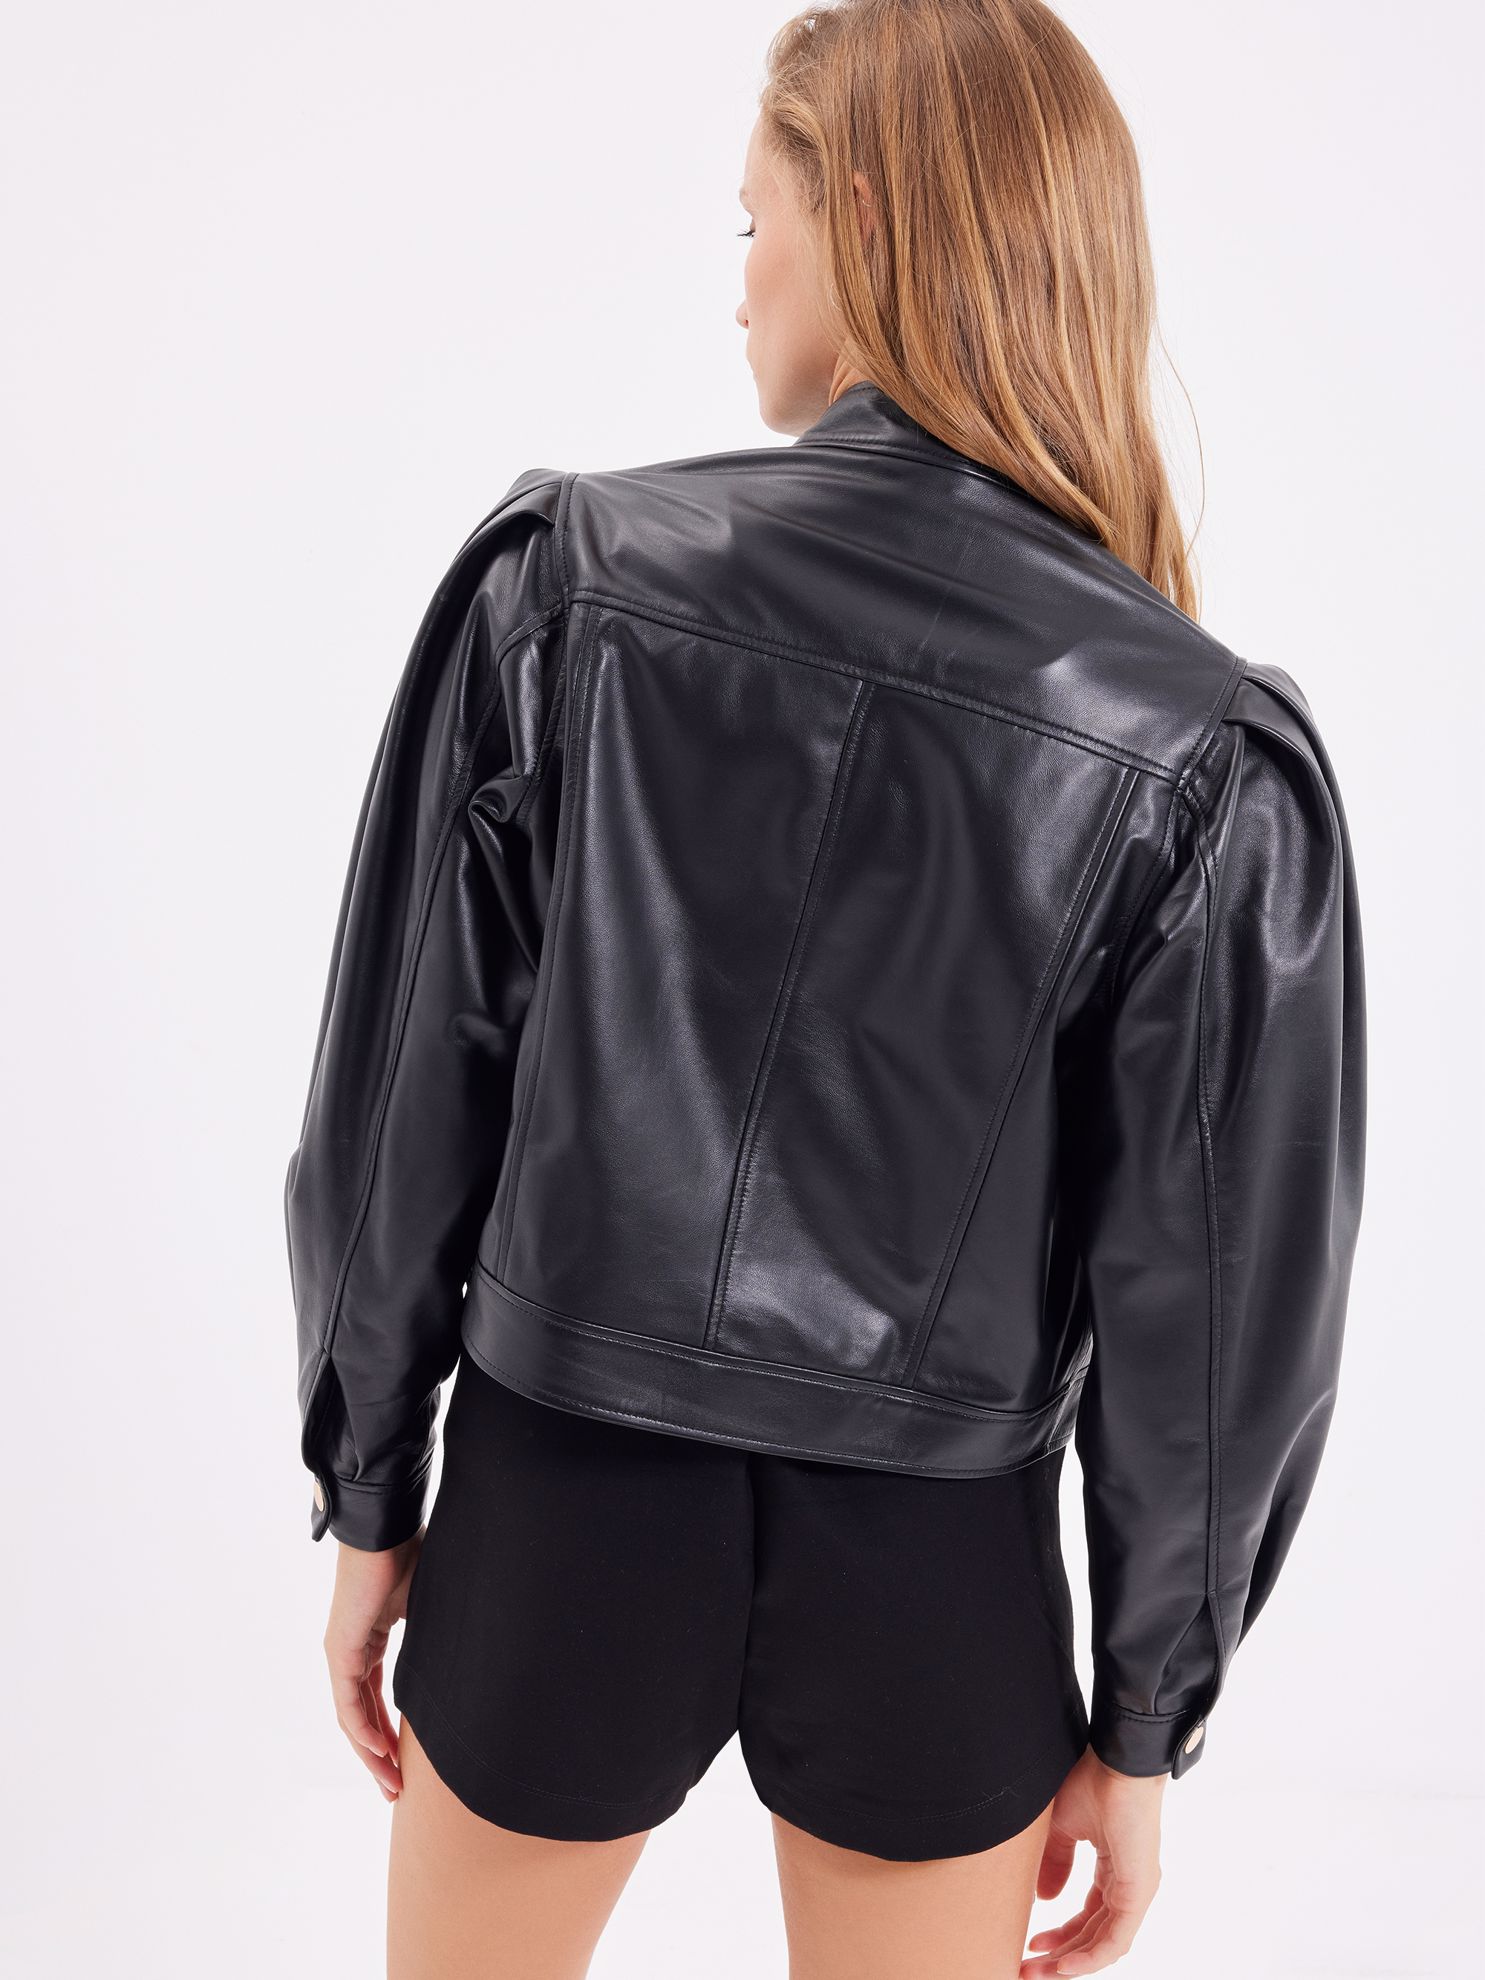 Karaca Kadın Deri Ceket-Siyah. ürün görseli